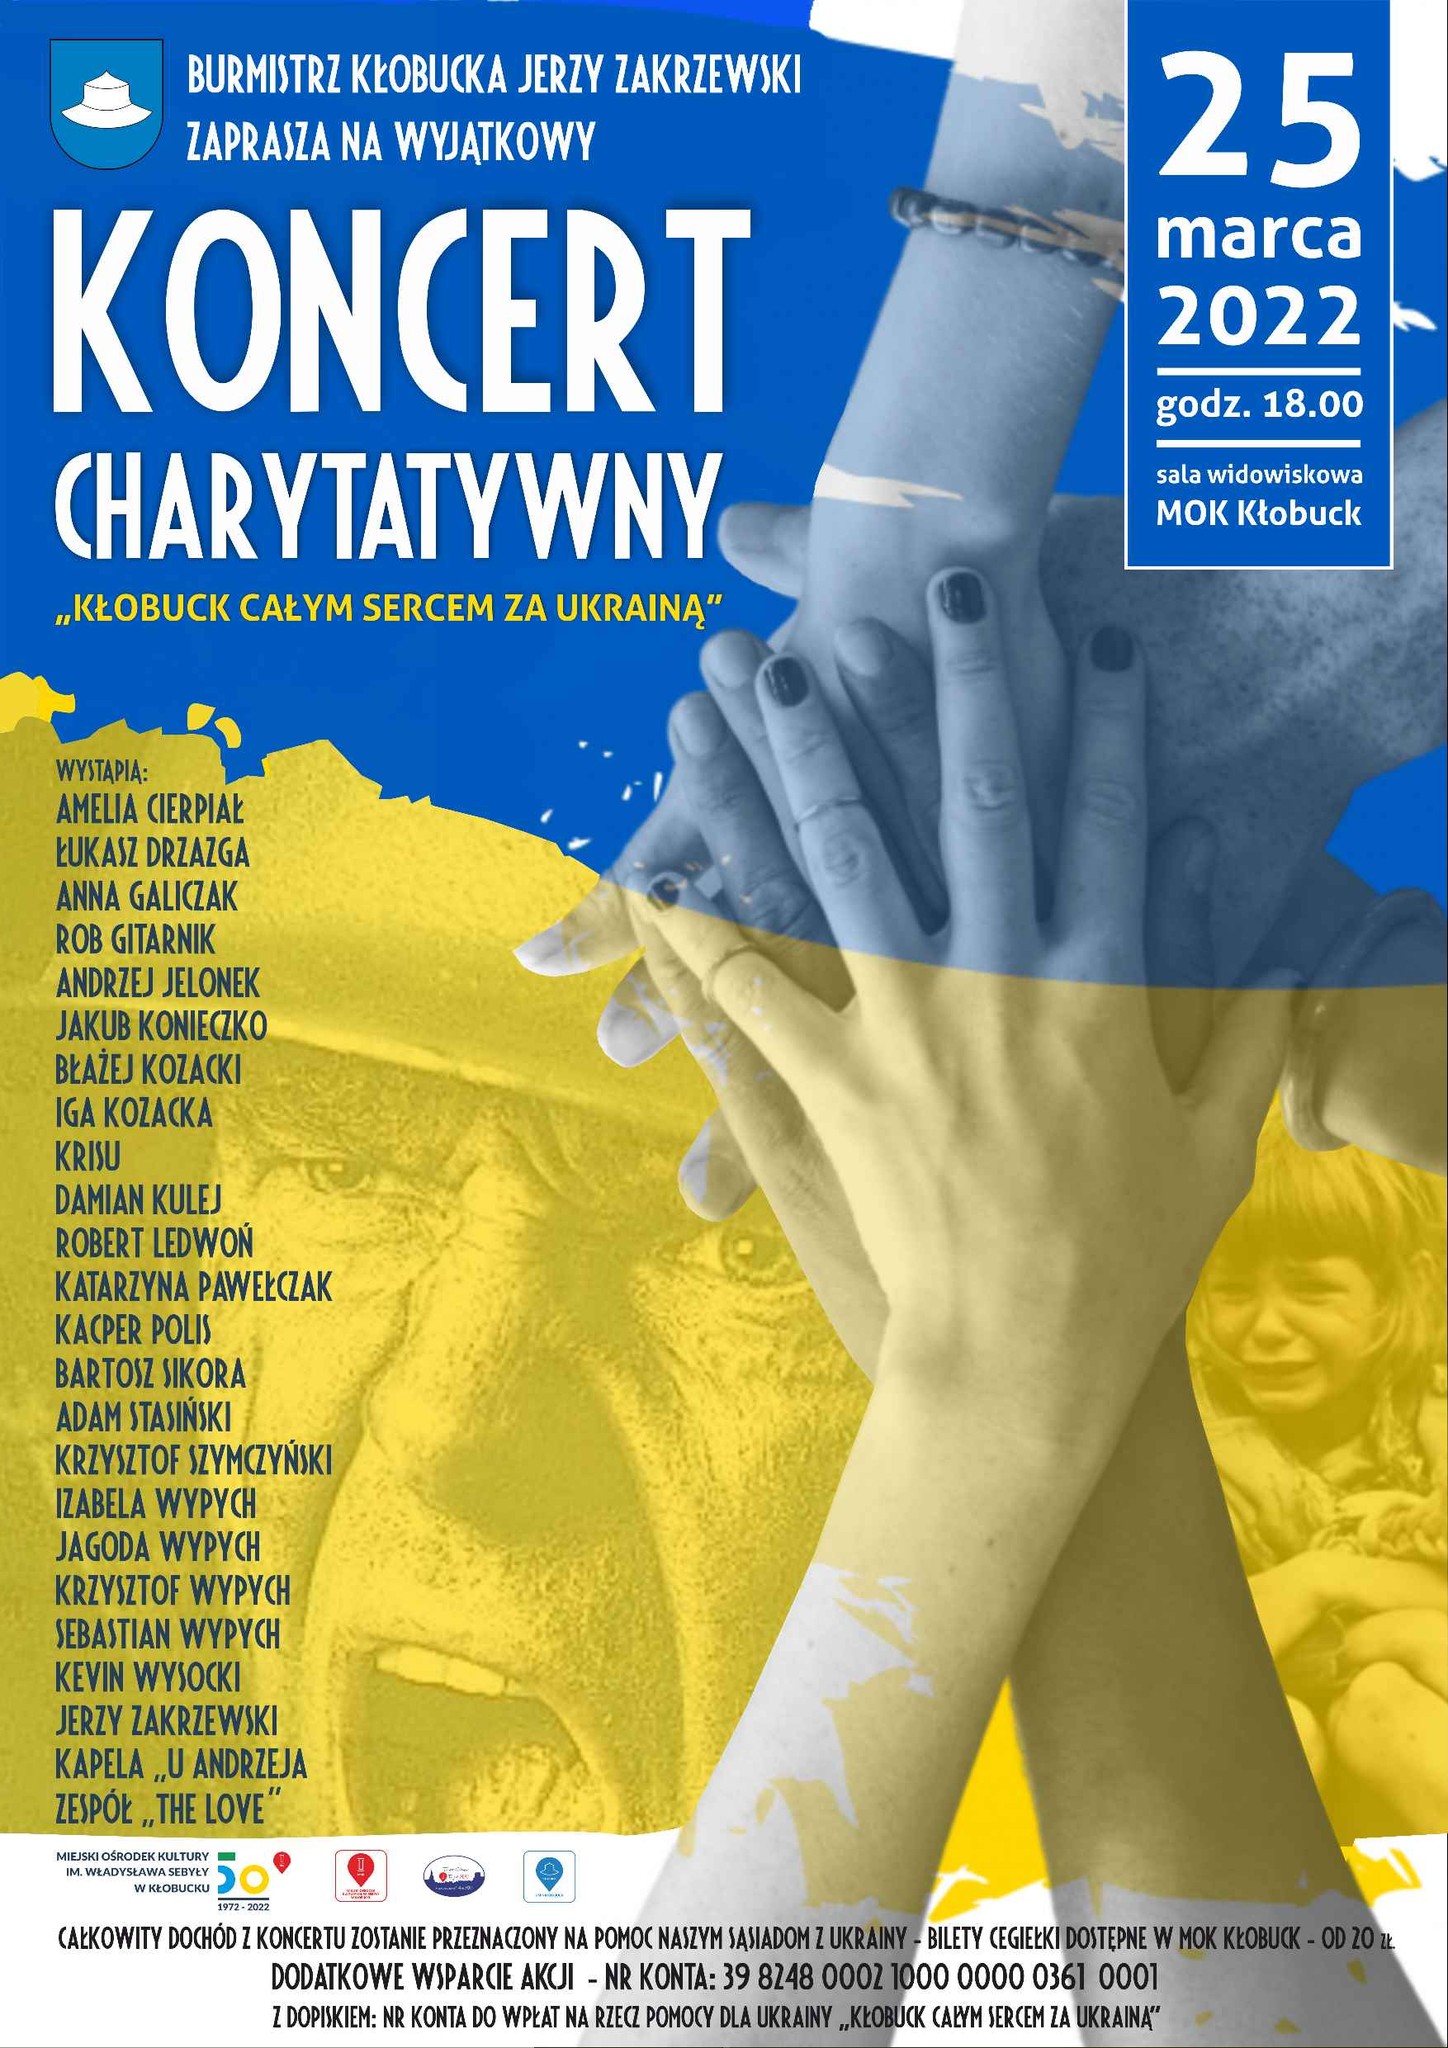 Kłobuck całym sercem z Ukrainą. Wyjątkowy koncert już 25 marca o godz. 18:00 9